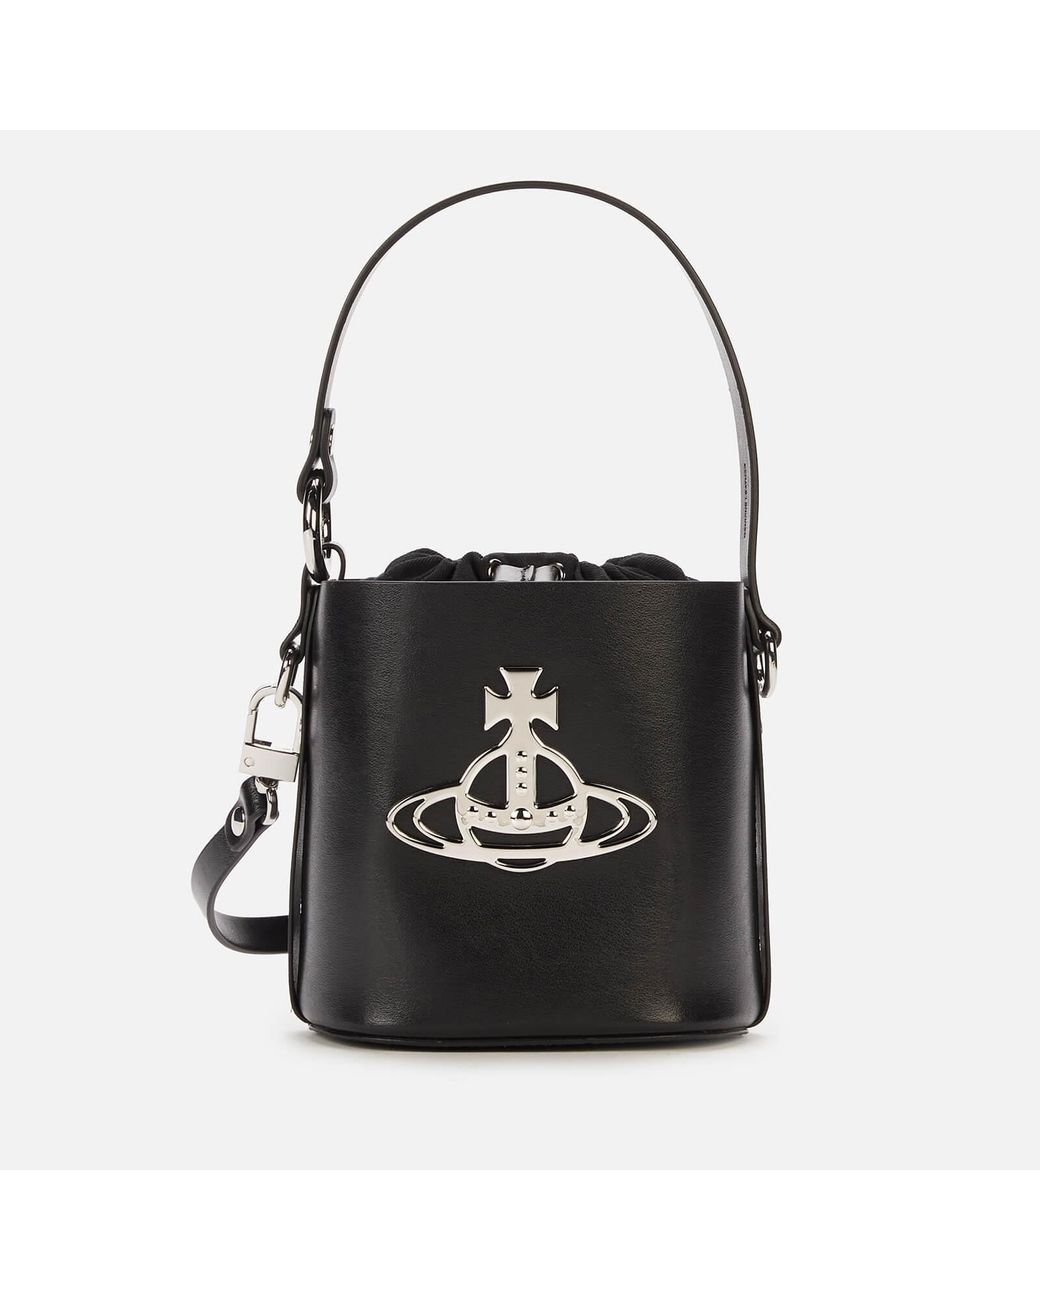 Vivienne Westwood Daisy Small Drawstring Bucket Bag in Black | Lyst Canada